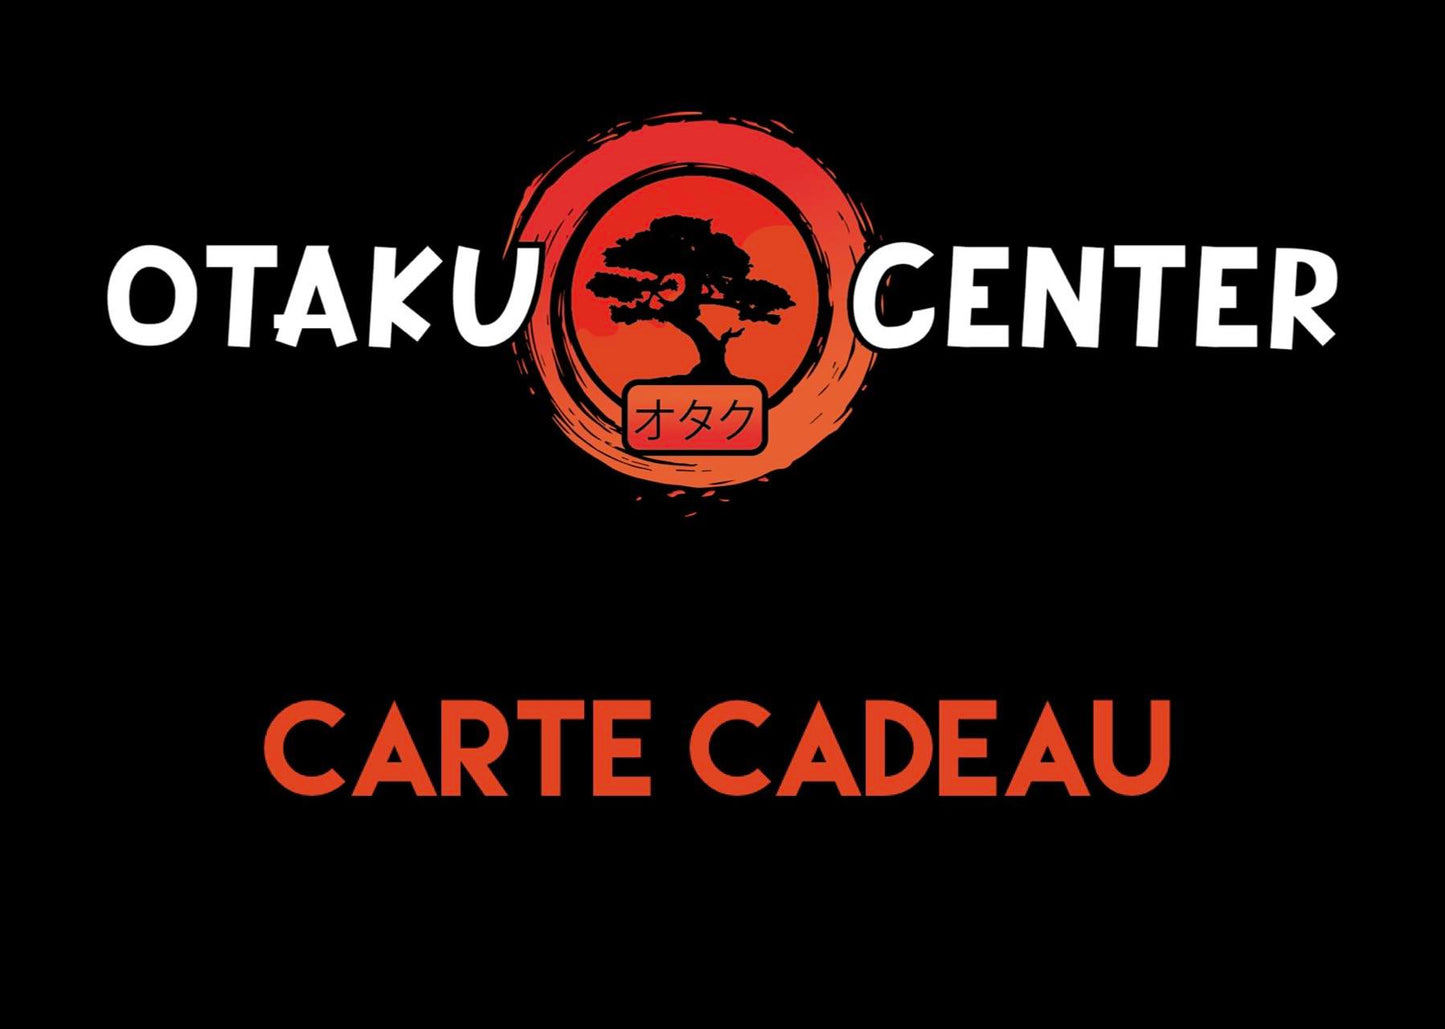 La carte-cadeau Otaku Center